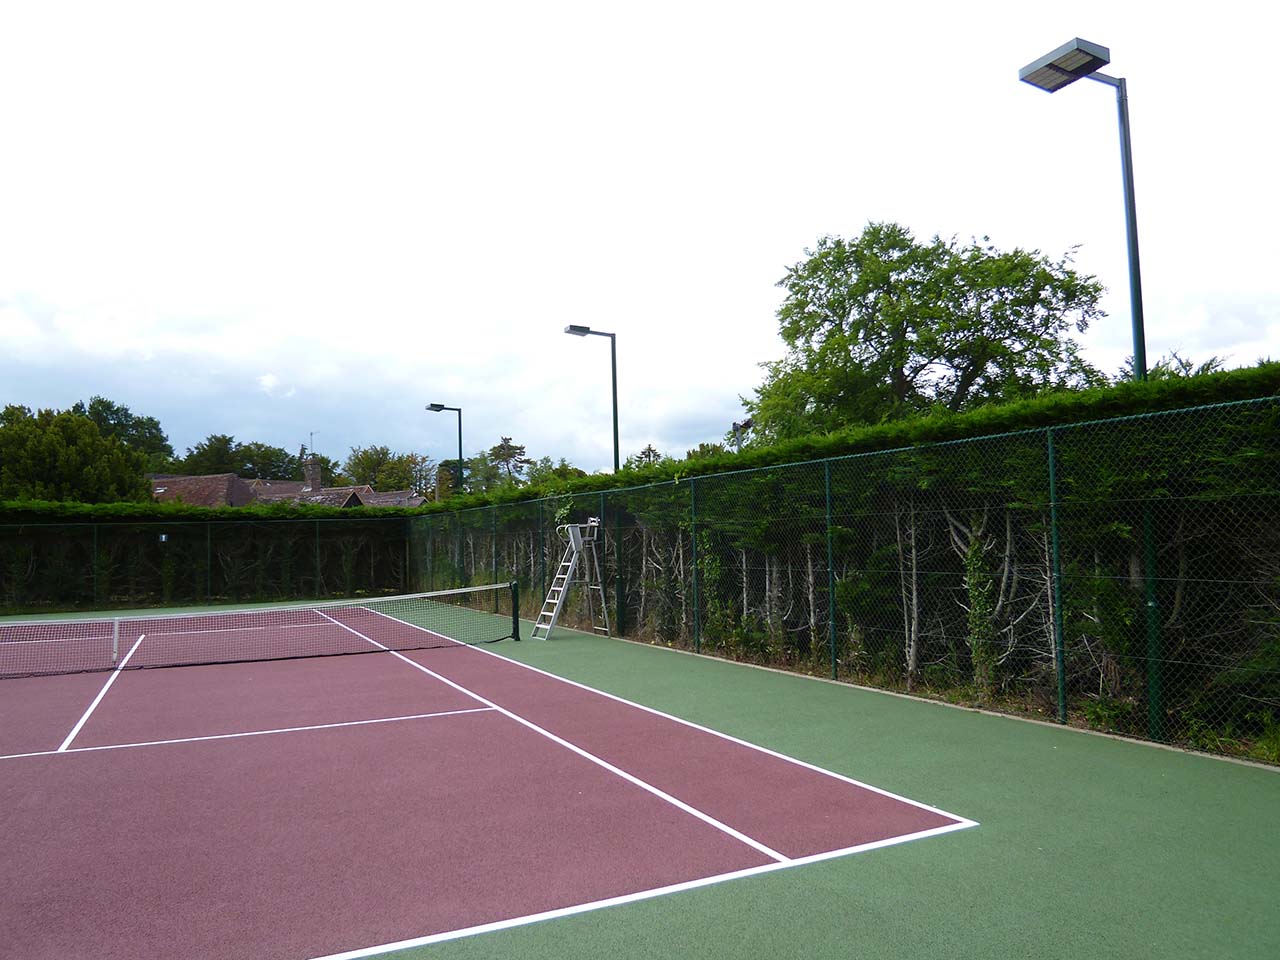 West Surrey Tennis Club